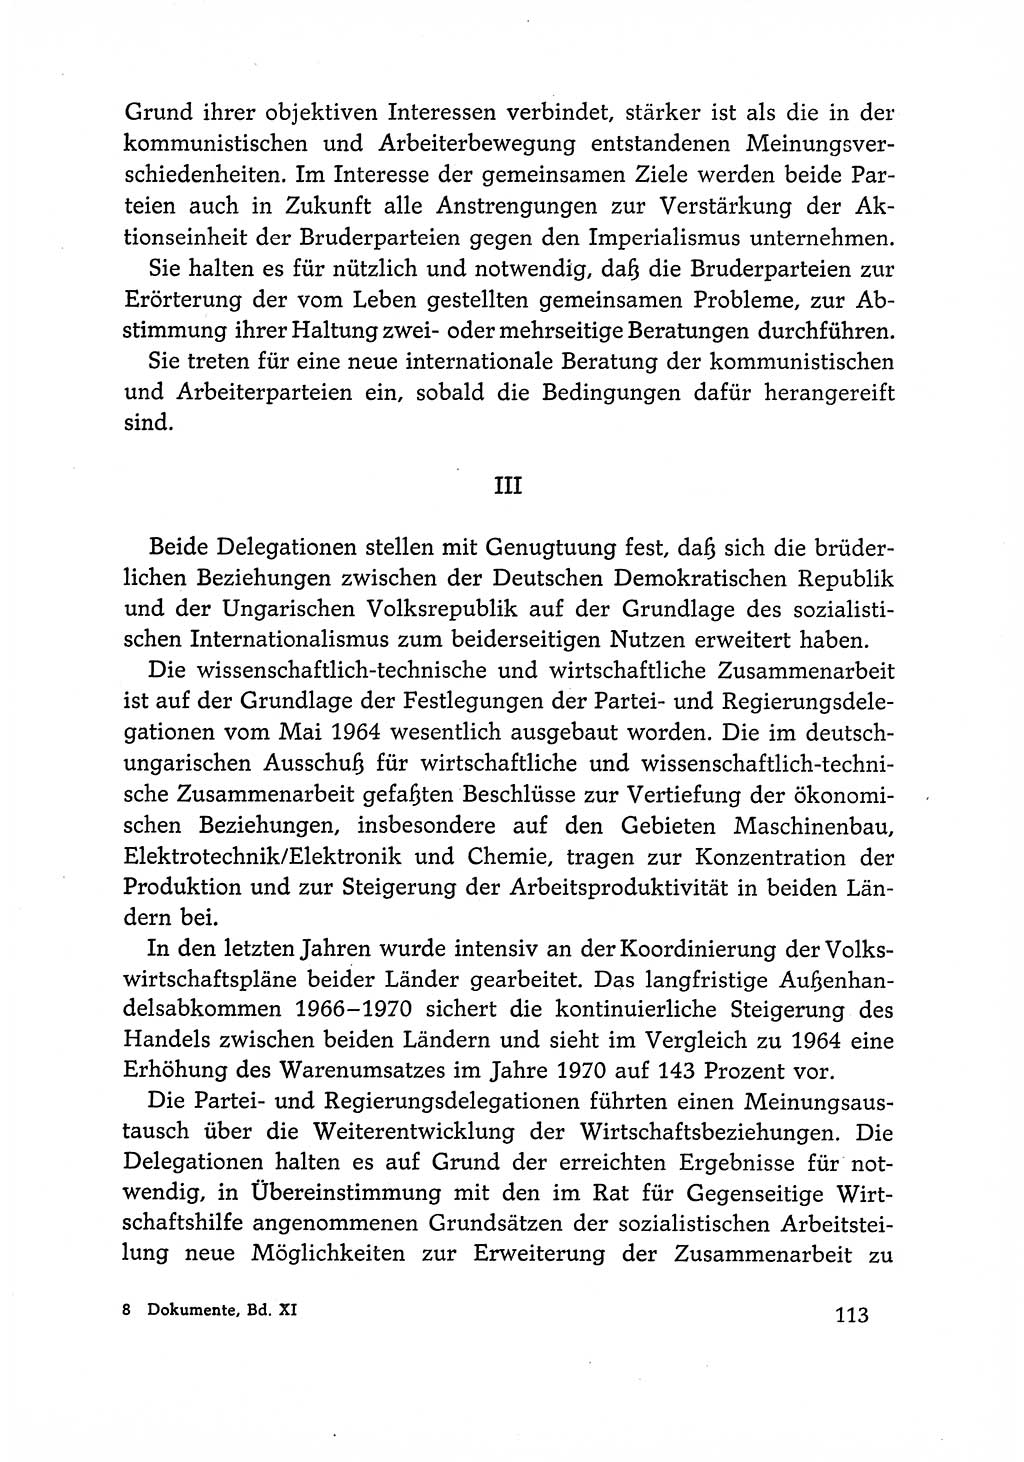 Dokumente der Sozialistischen Einheitspartei Deutschlands (SED) [Deutsche Demokratische Republik (DDR)] 1966-1967, Seite 113 (Dok. SED DDR 1966-1967, S. 113)